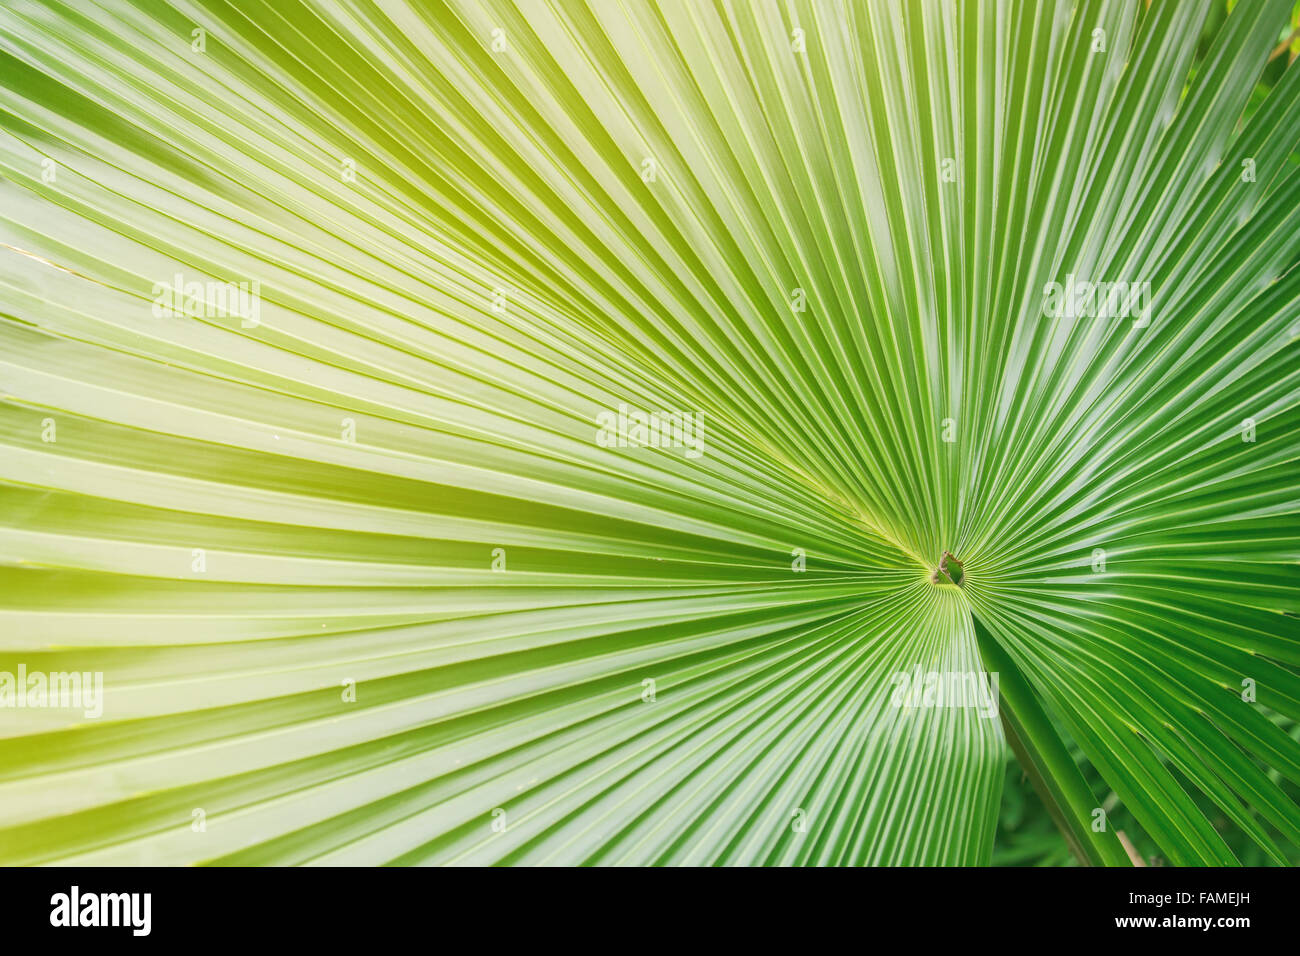 Grande feuille de palmier en vert et jaune Banque D'Images